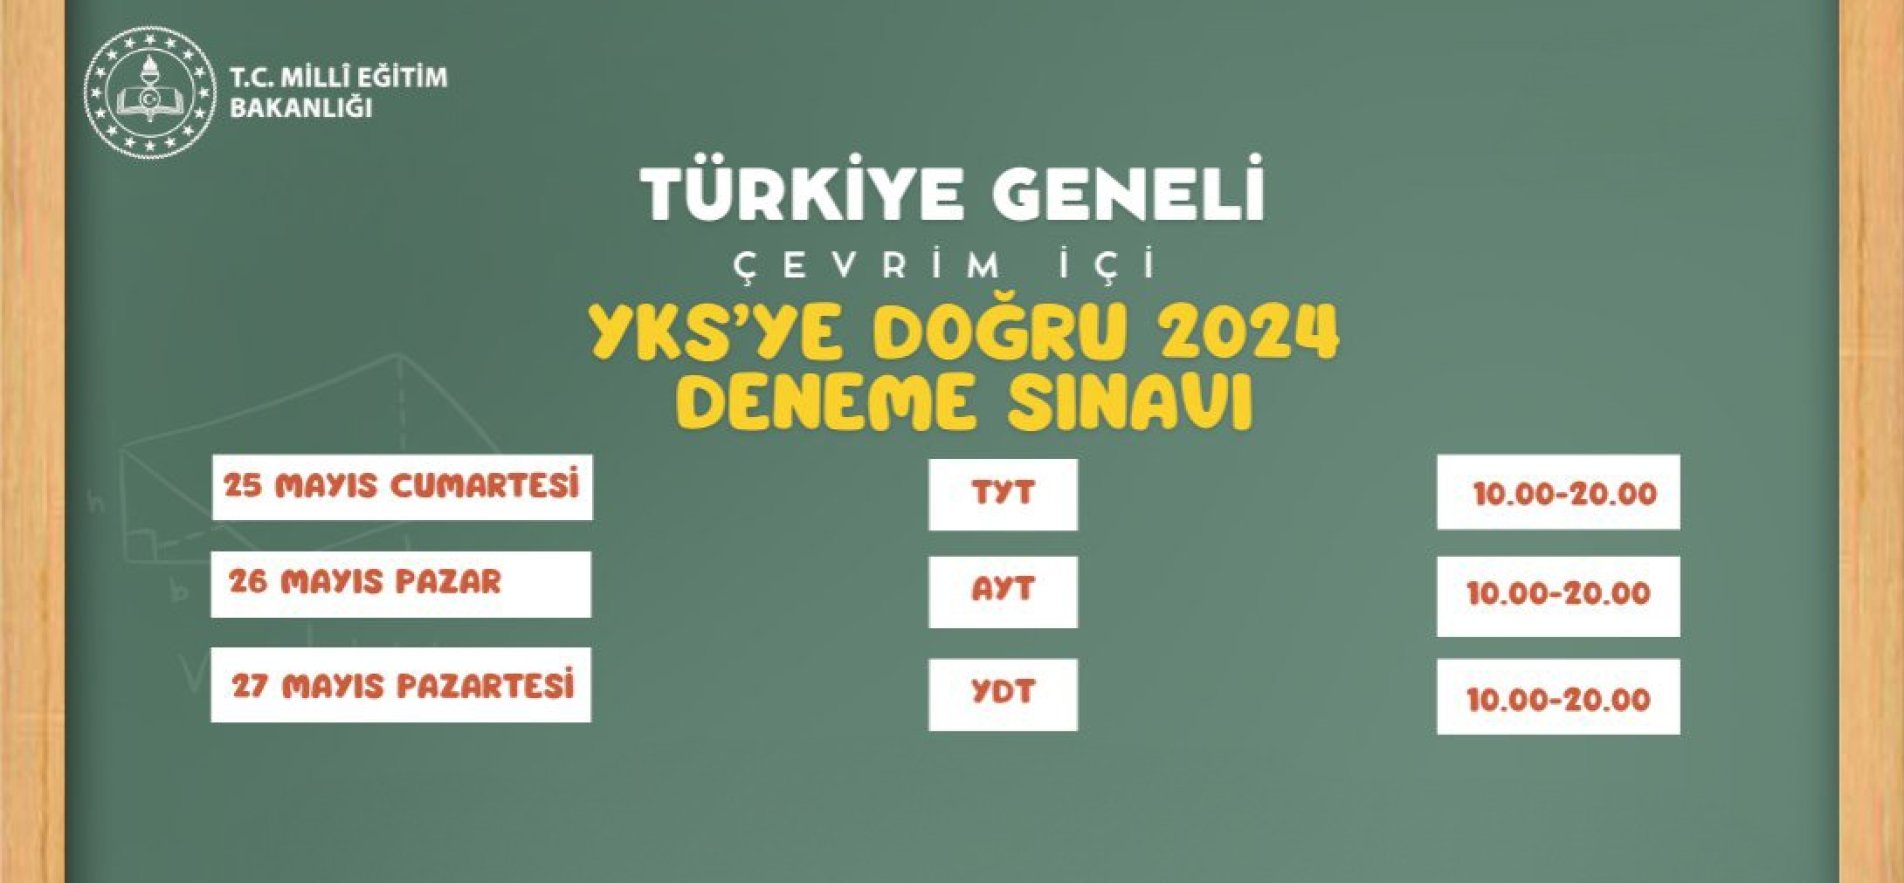 Türkiye Geneli ‘Yks Çevrim İçi Deneme Sınavı’ Yapılacak Görseli Bakanlıktan Alındı